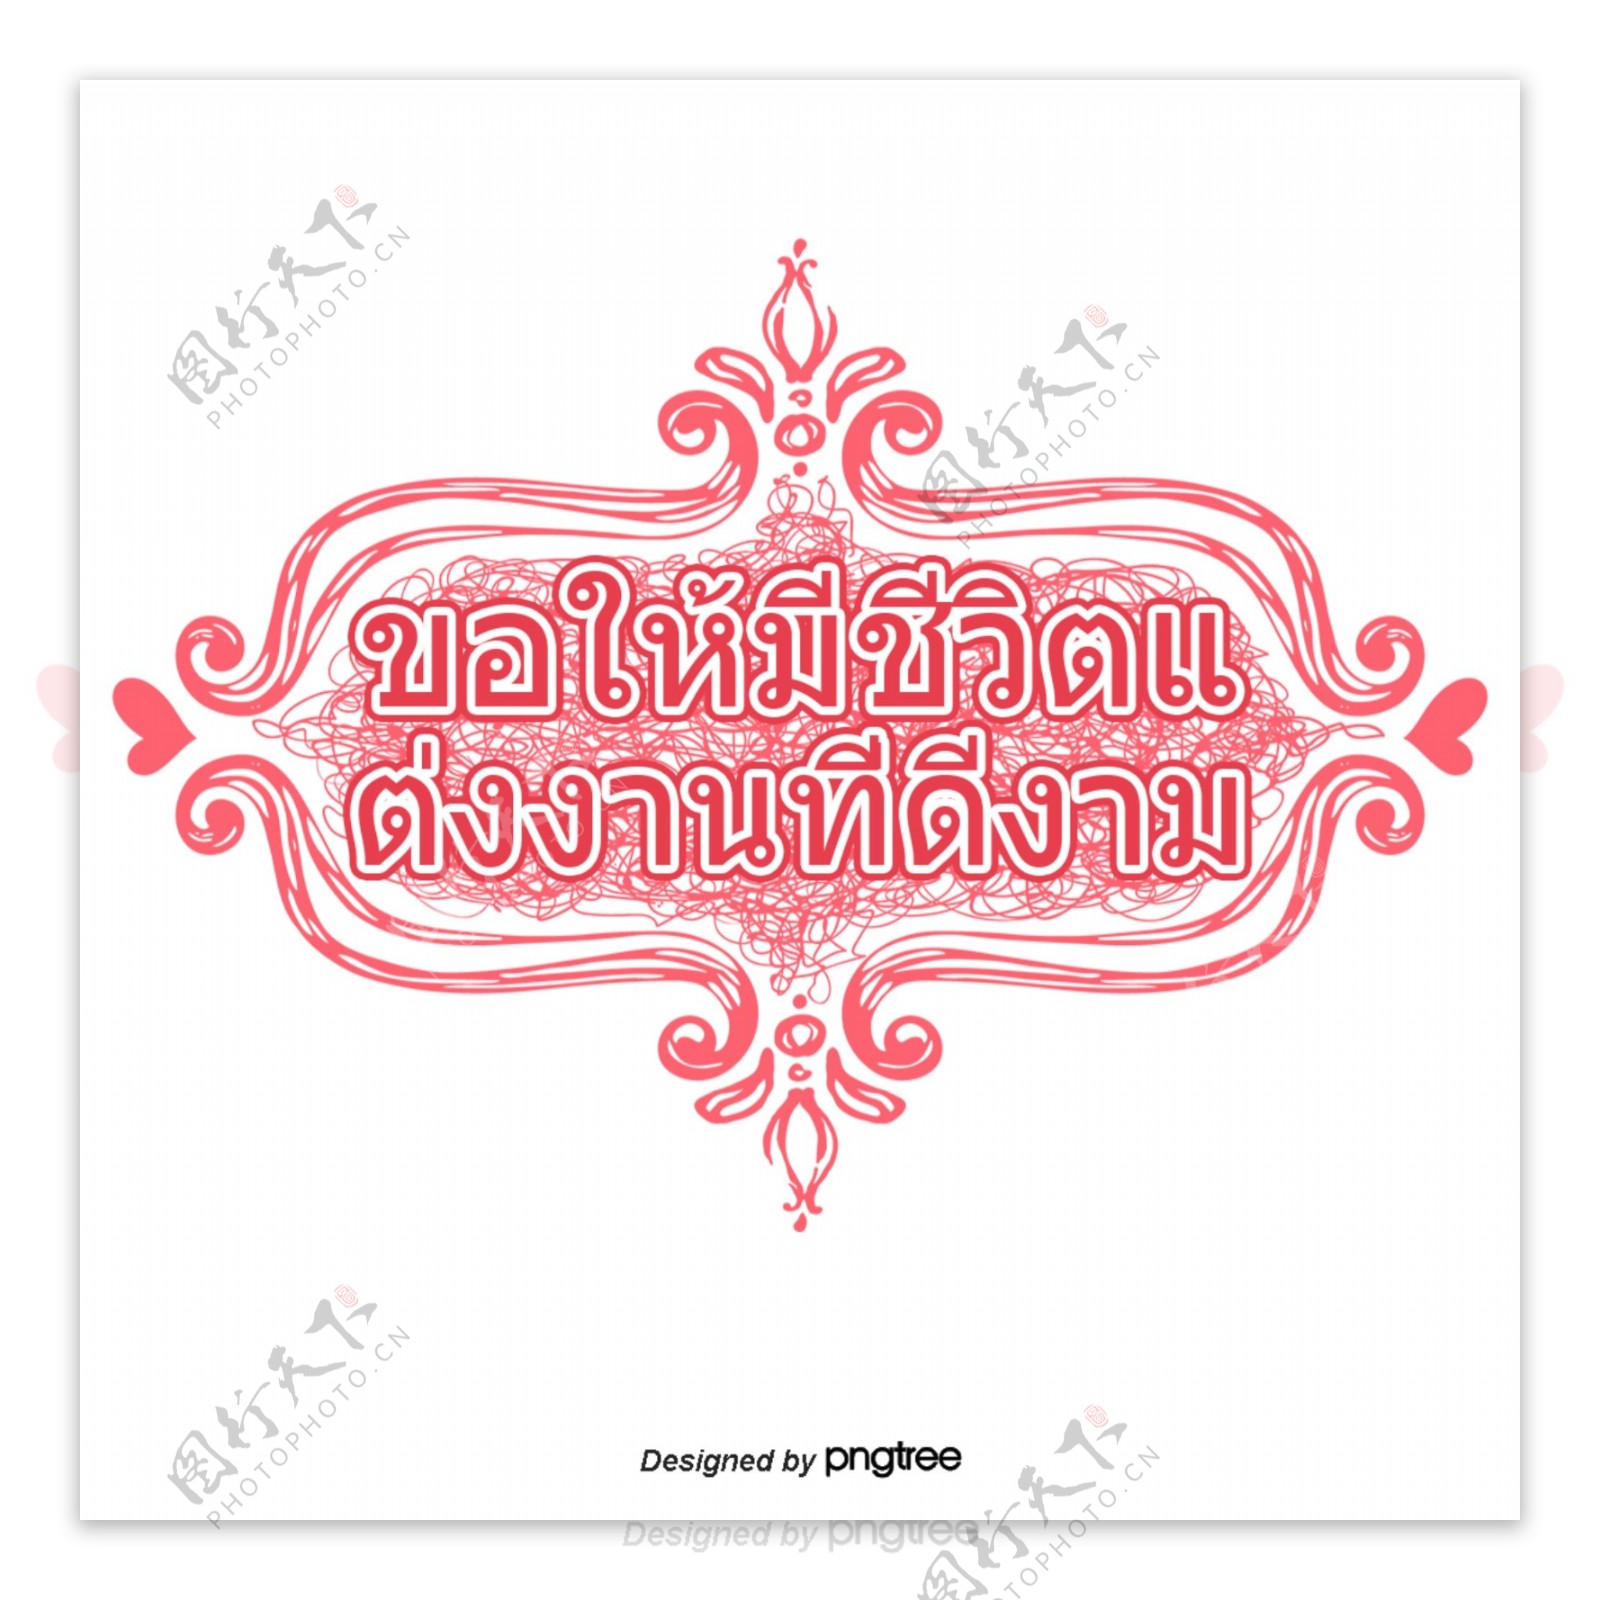 汉字字体有泰国泰国美丽的红色红色的心结婚